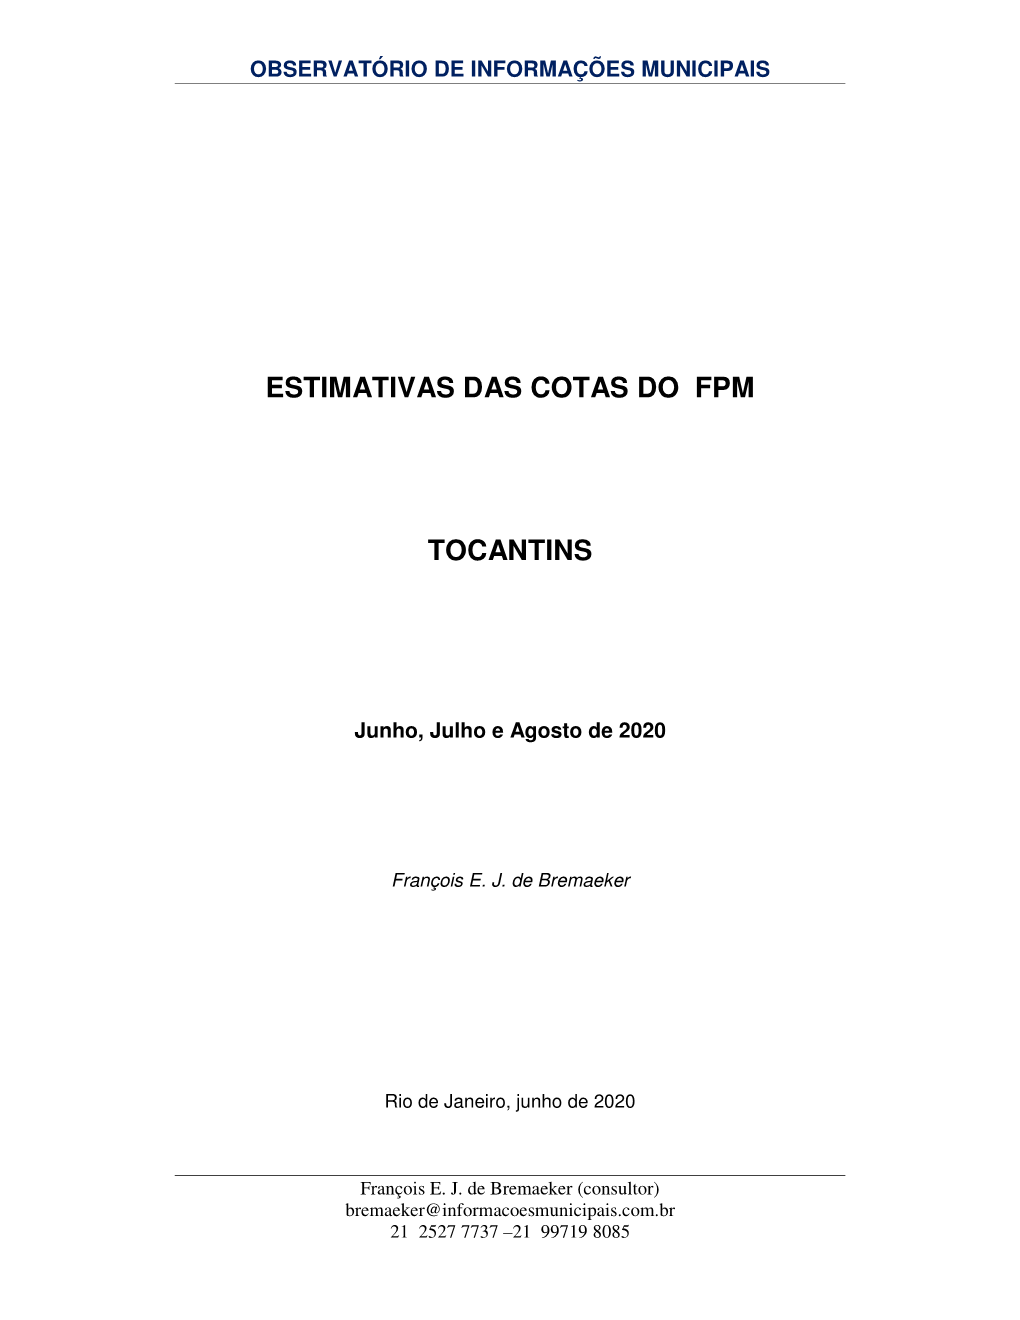 ESTIMATIVAS DAS COTAS DO FPM TOCANTINS -.. Observatório De